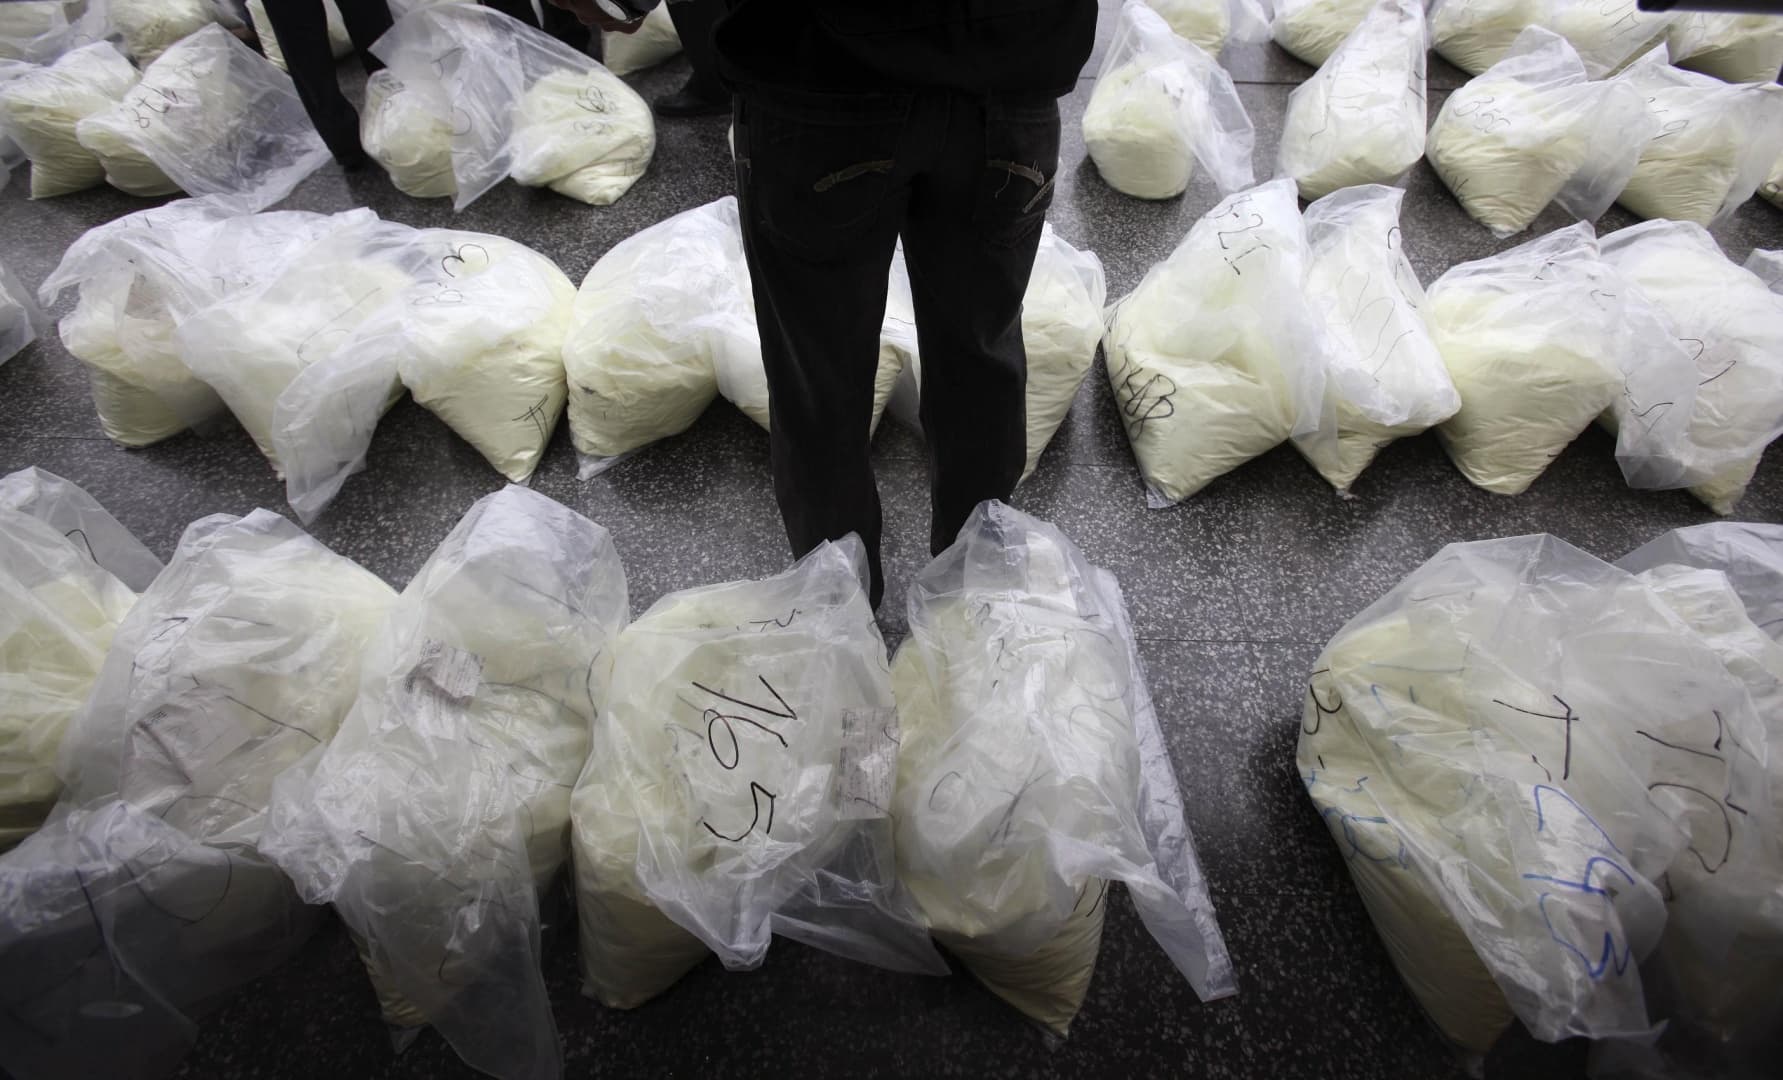 Több mint egy tonna kokaint foglaltak le egy halszállítmány közé rejtve